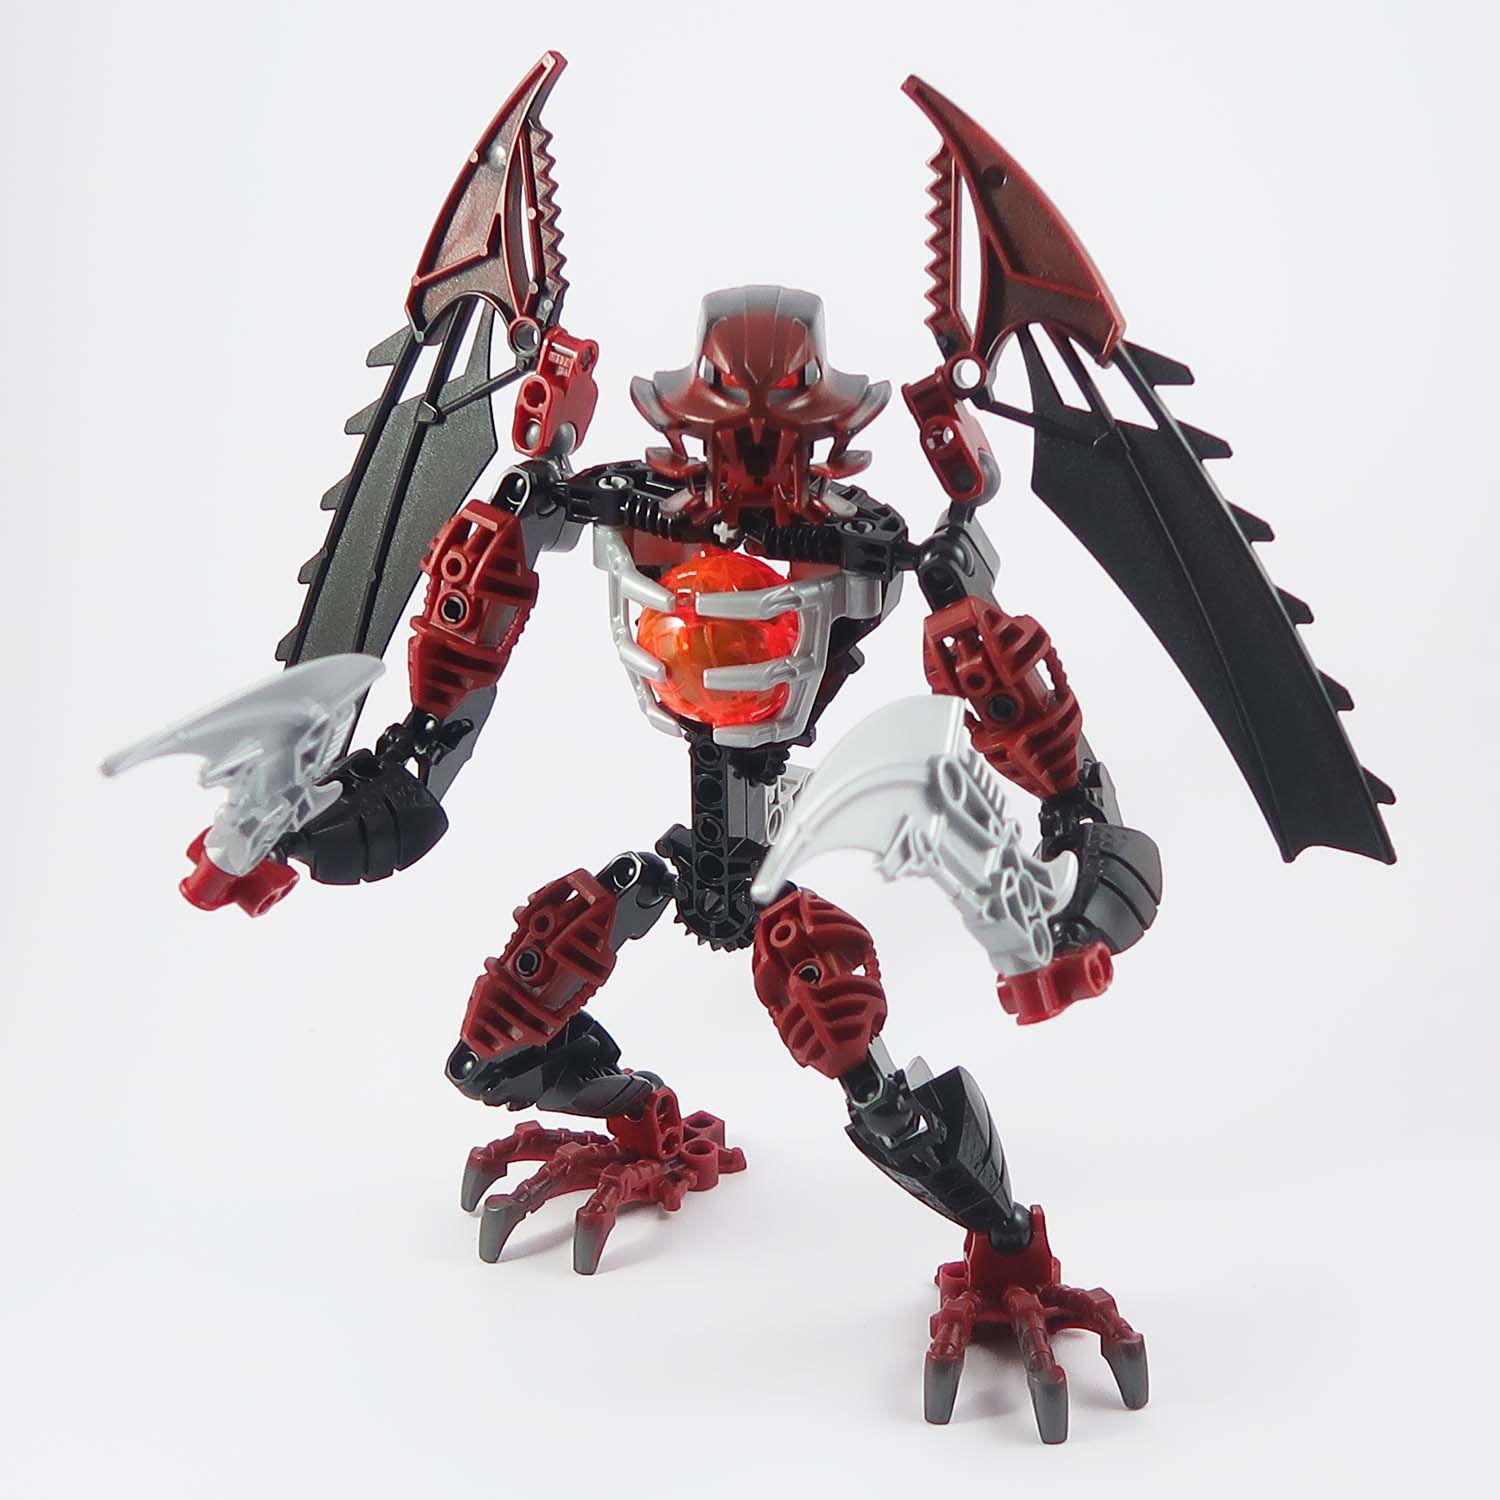 LEGO Bionicle - Phantoka Antroz (8691)